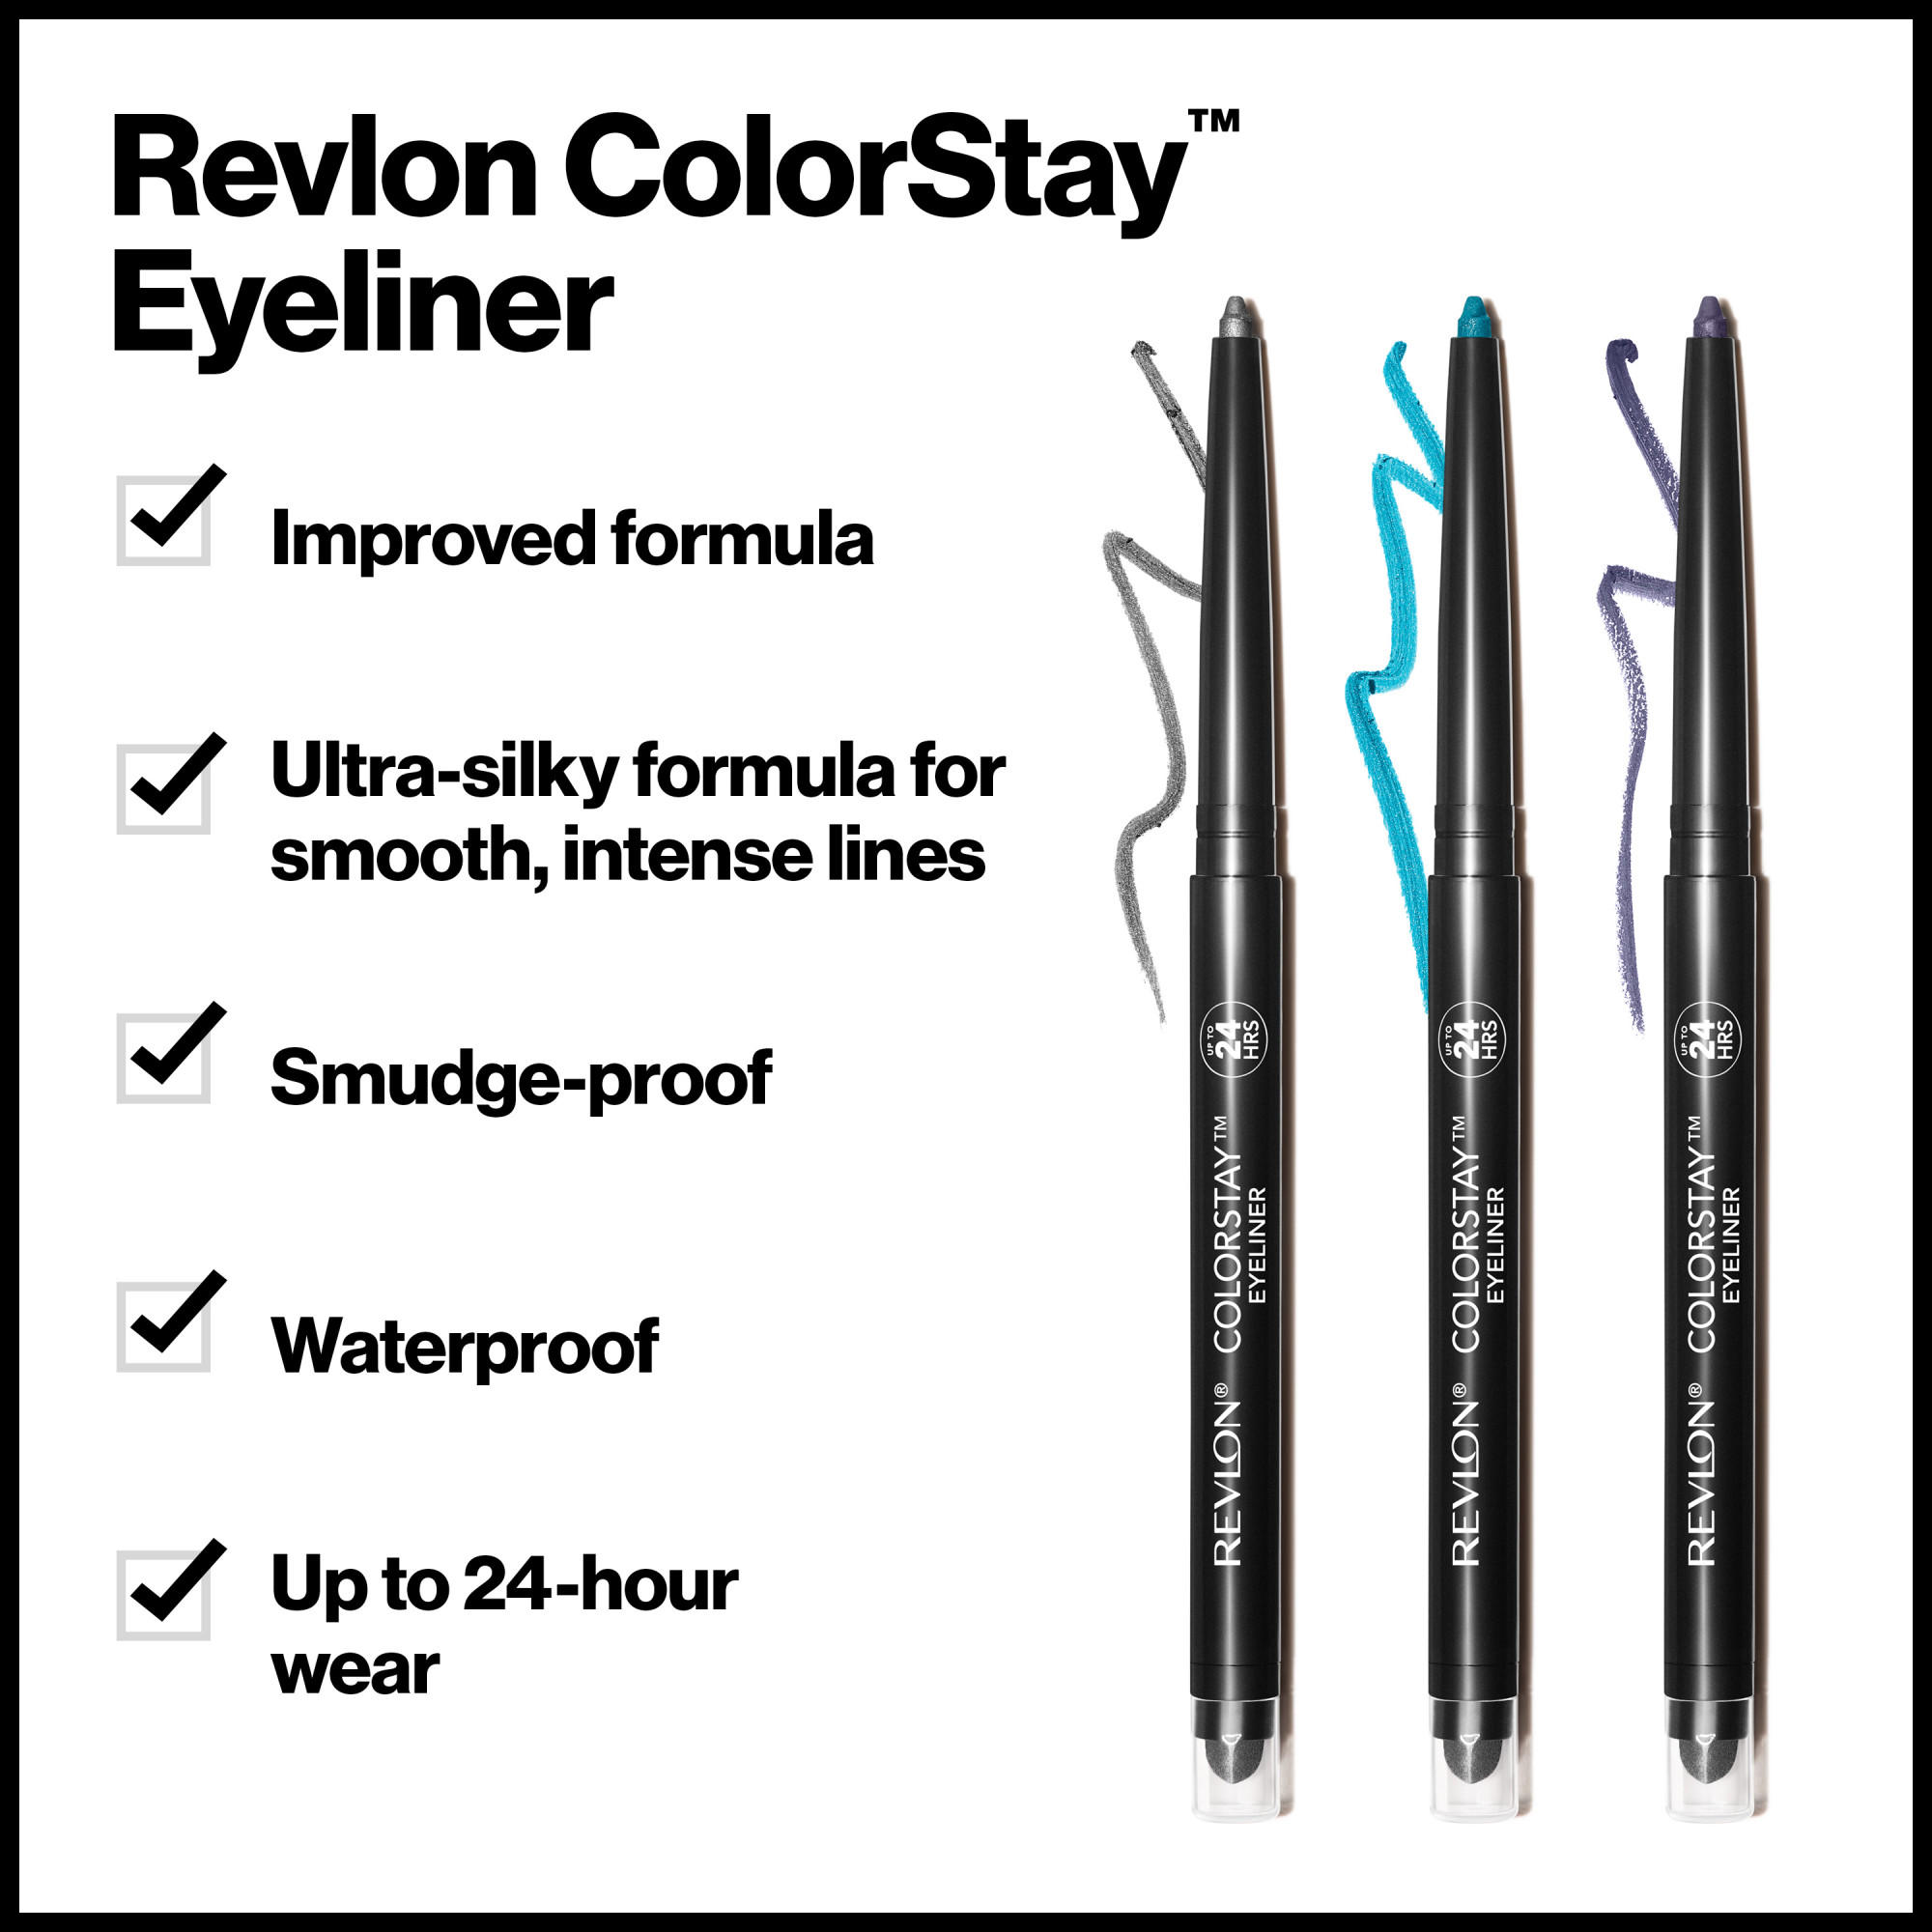 Revlon ColorStay Waterproof Eyeliner Pencil, 24HR Wear, Built-in Sharpener, 201 Black, 0.01 oz - image 4 of 8